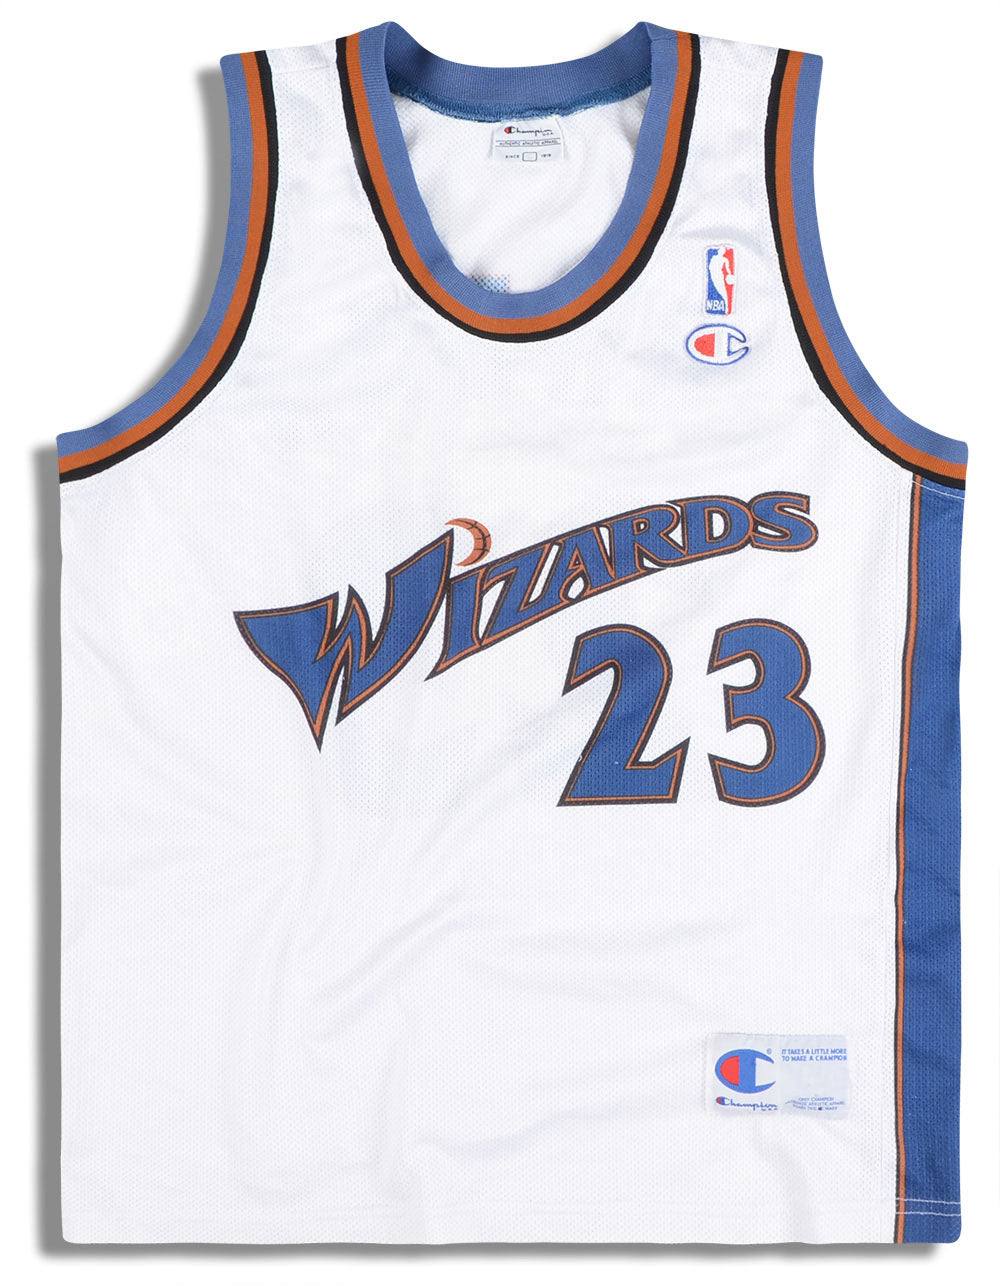  adidas Washington Wizards NBA White NBA Authentic On